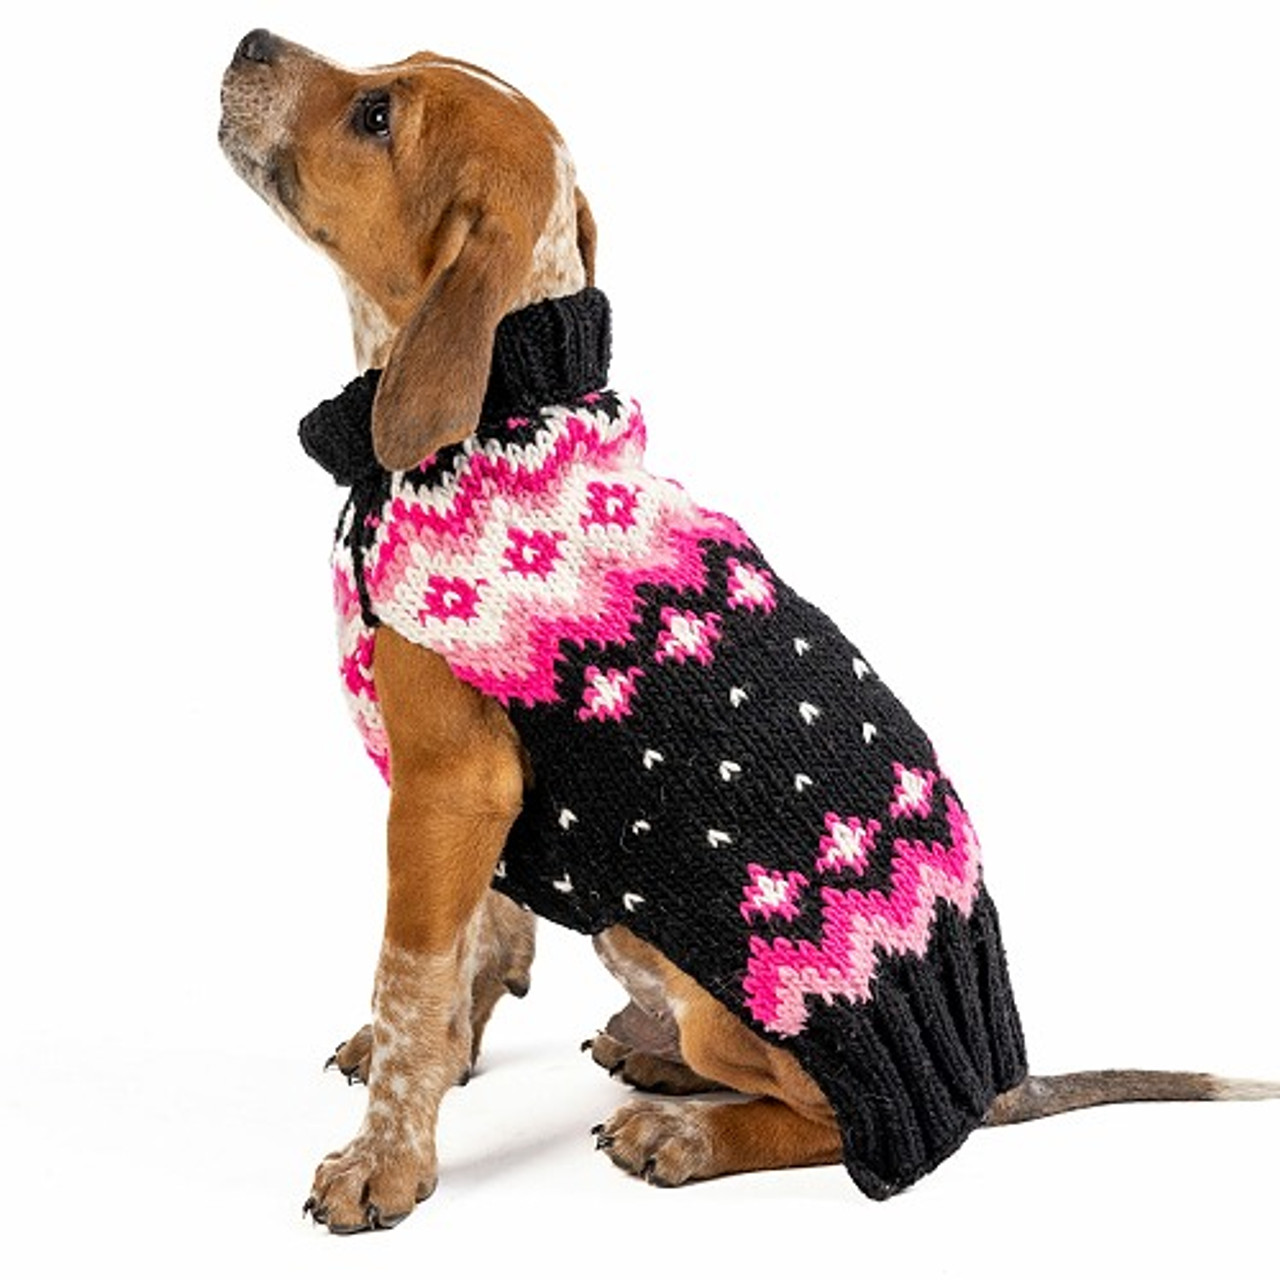 Summer Cotton Knit Pet Sling Dog Carriers - HEART PUP on SHARK